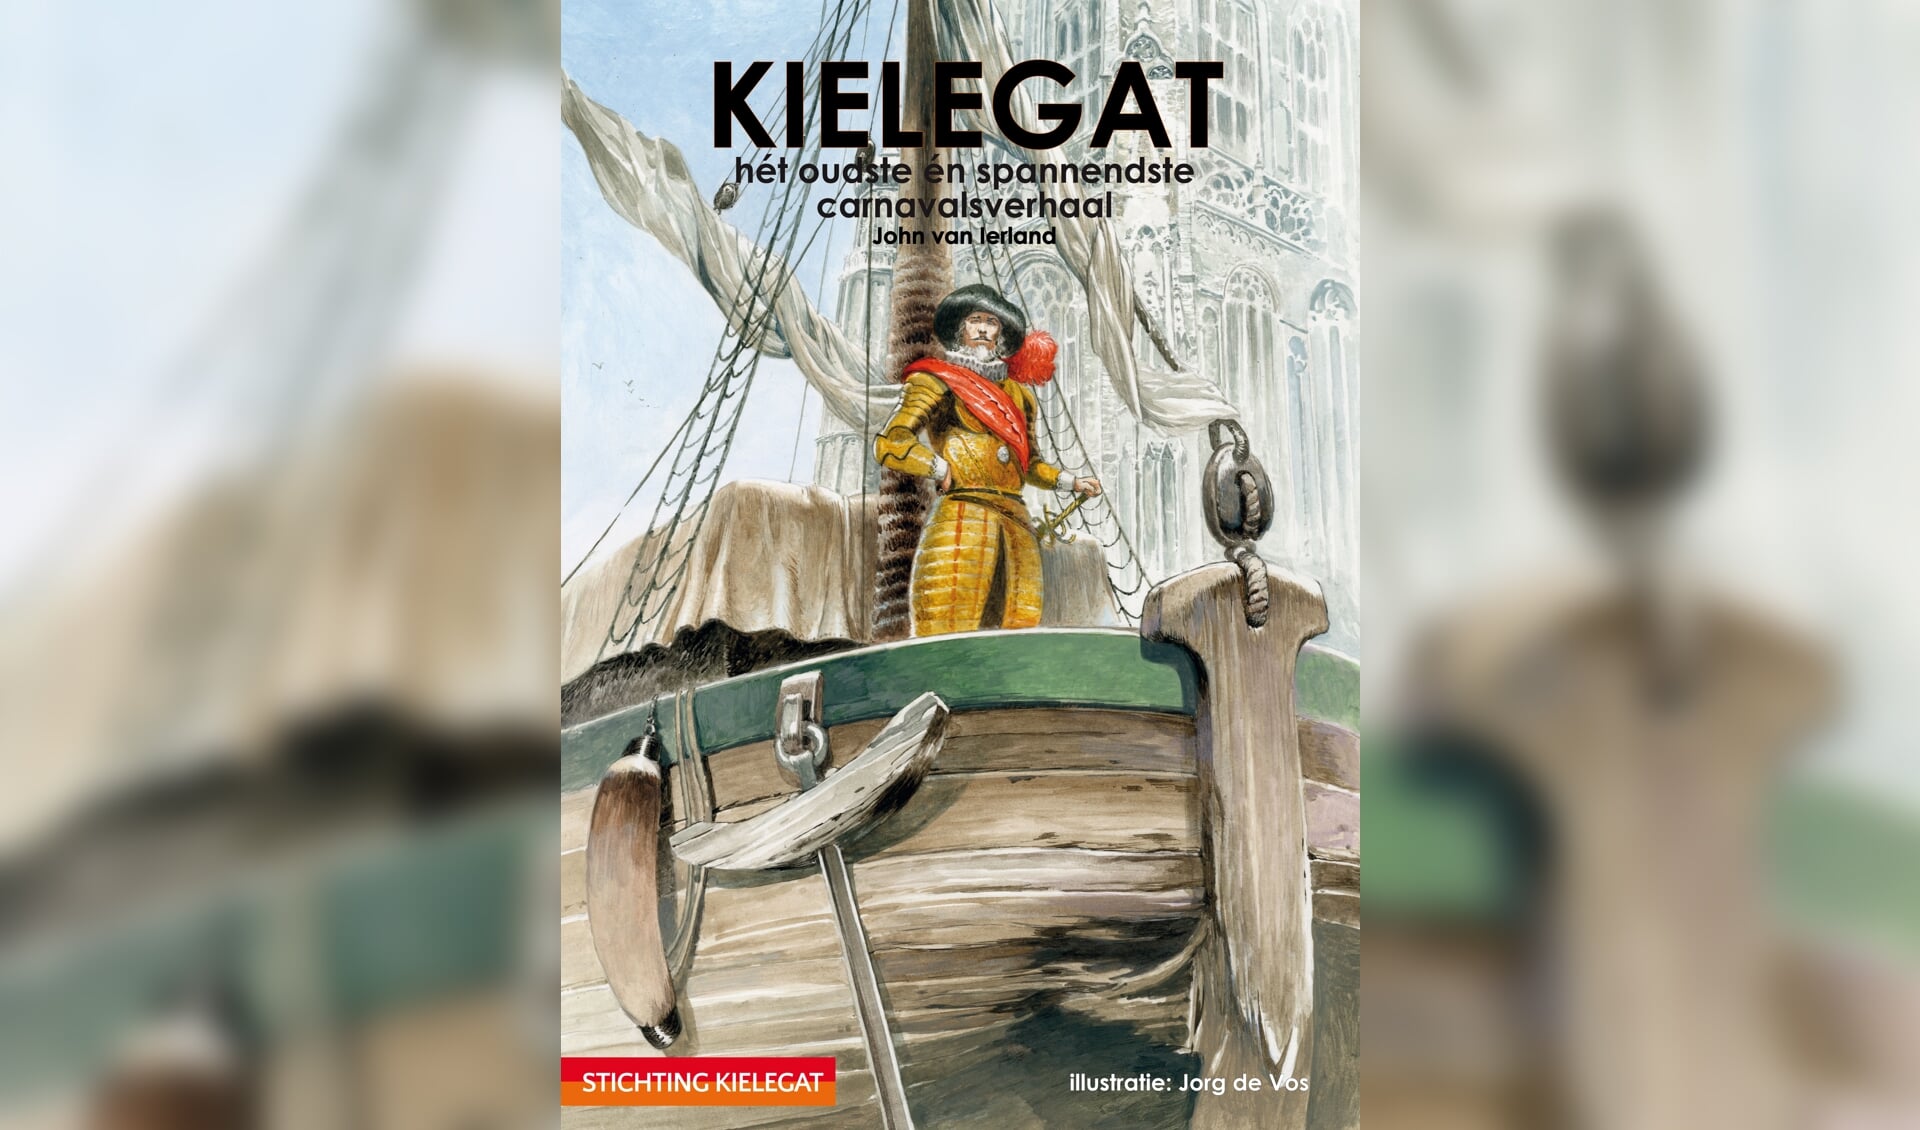 De omslag van het boek ‘Kielegat, het oudste en spannendste carnavalsverhaal’